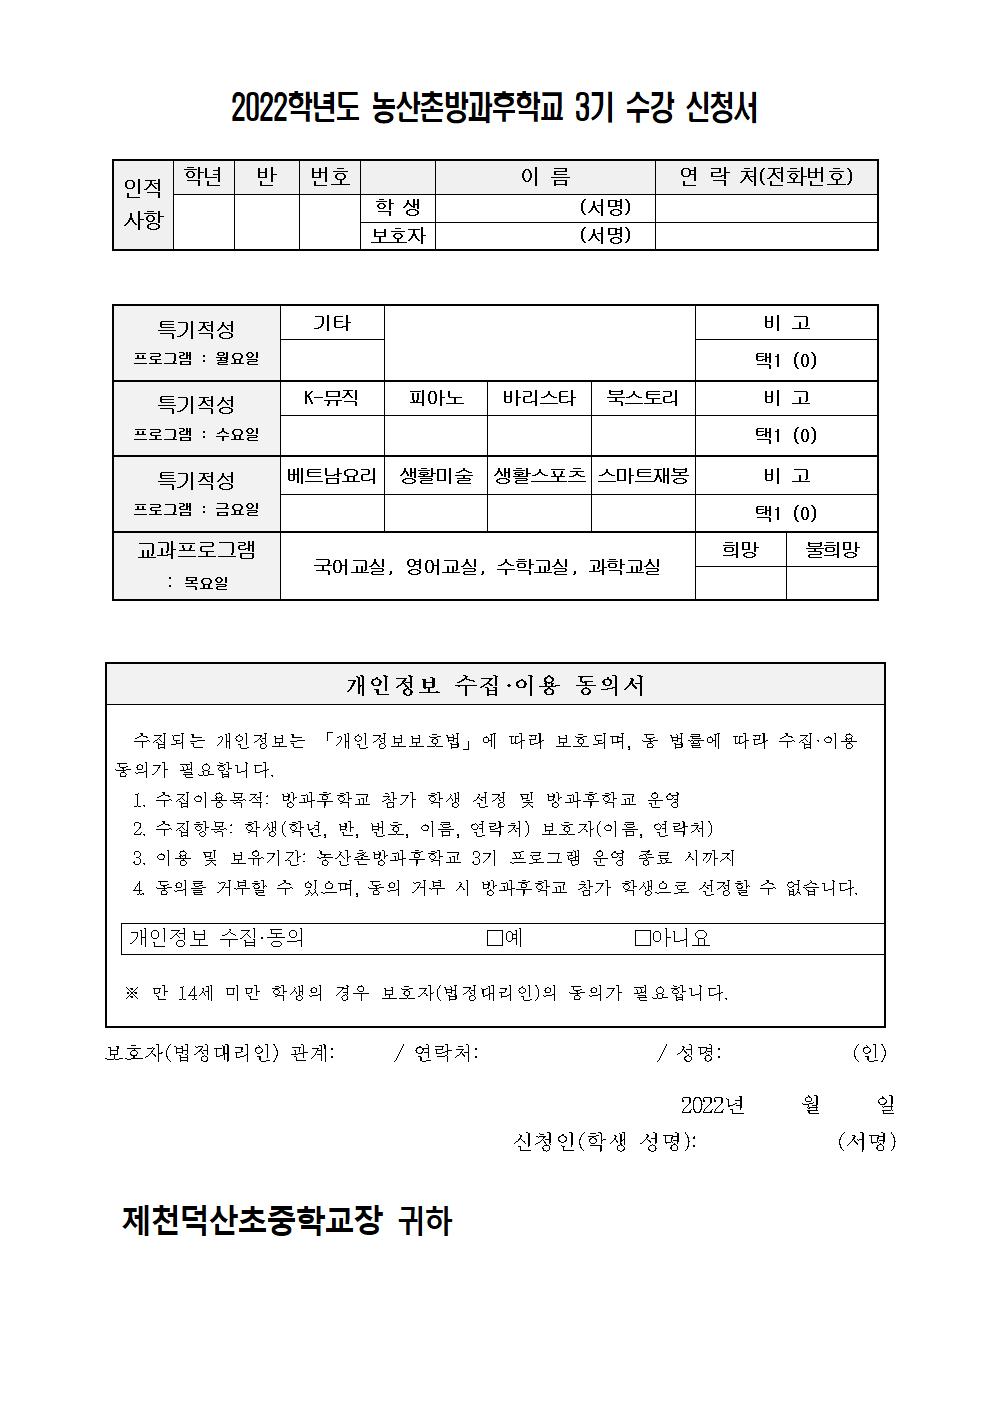 2022. 농산촌방과후학교 2학기(3기) 수강 신청 가정통신문002